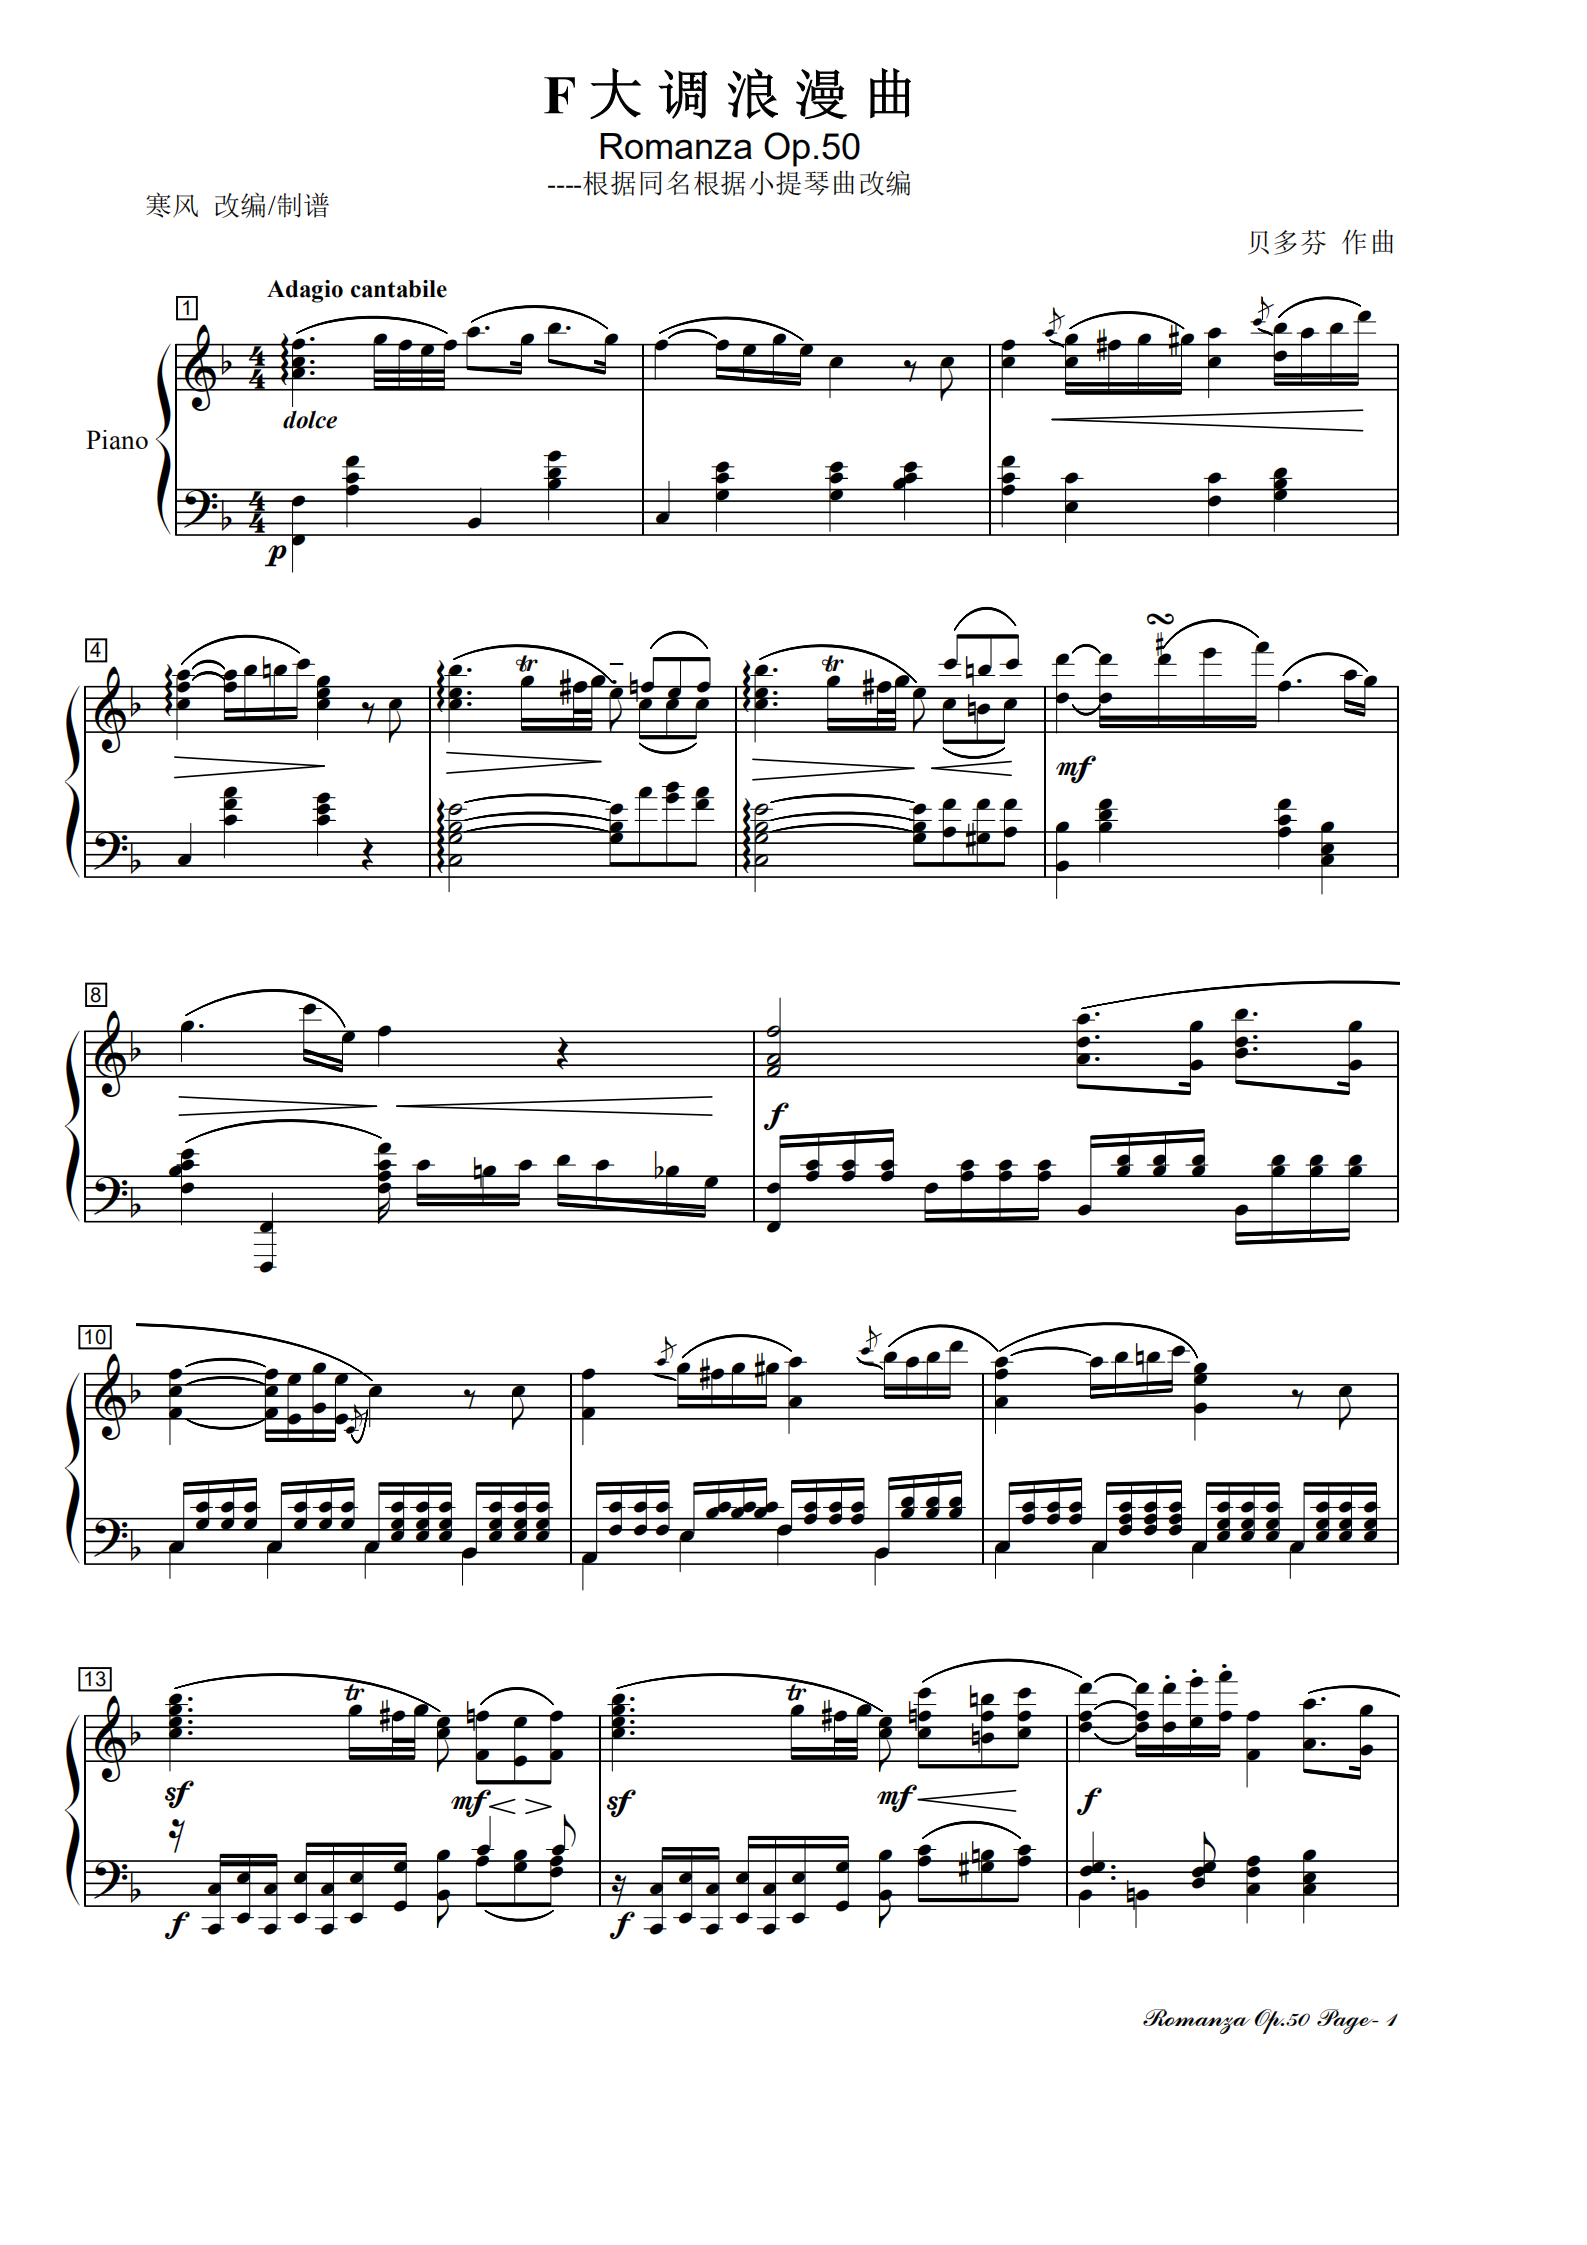 贝多芬F大调浪漫曲(Op.50)钢琴版钢琴谱-寒风-虫虫钢琴